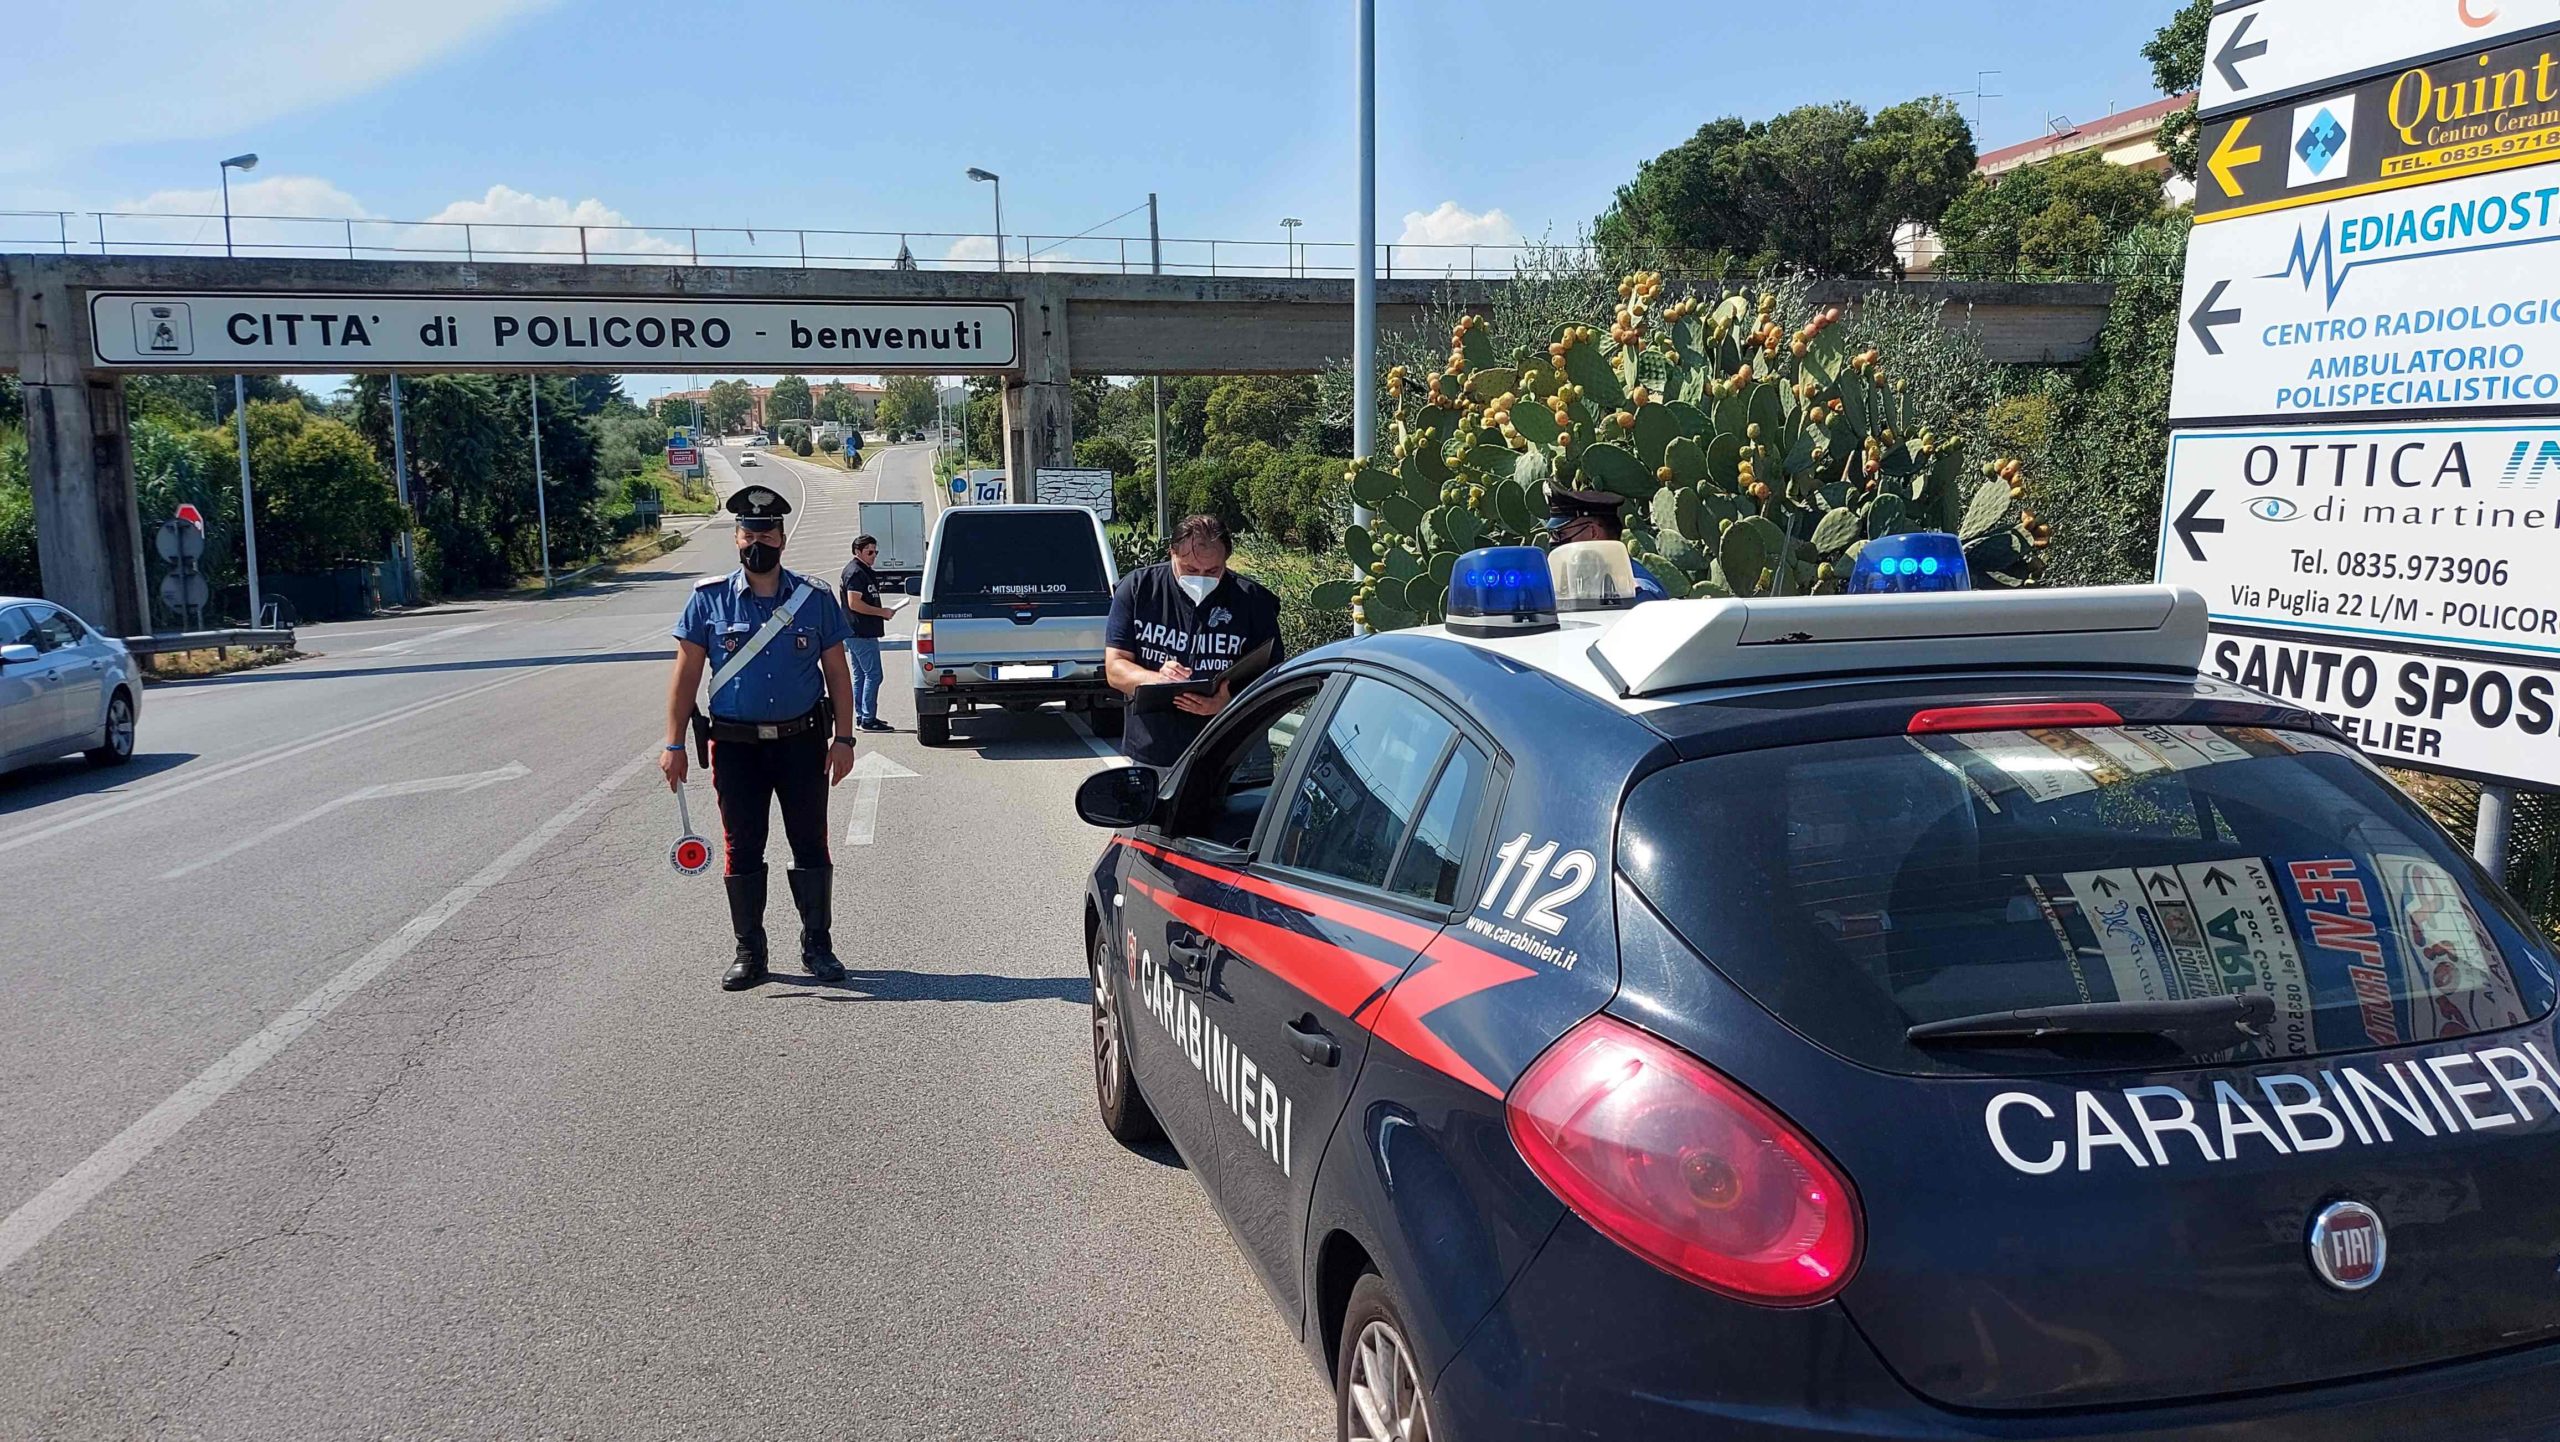 “Stazione di servizio” abusiva a Policoro: scoperta dai Carabinieri truffa ai danni dello Stato